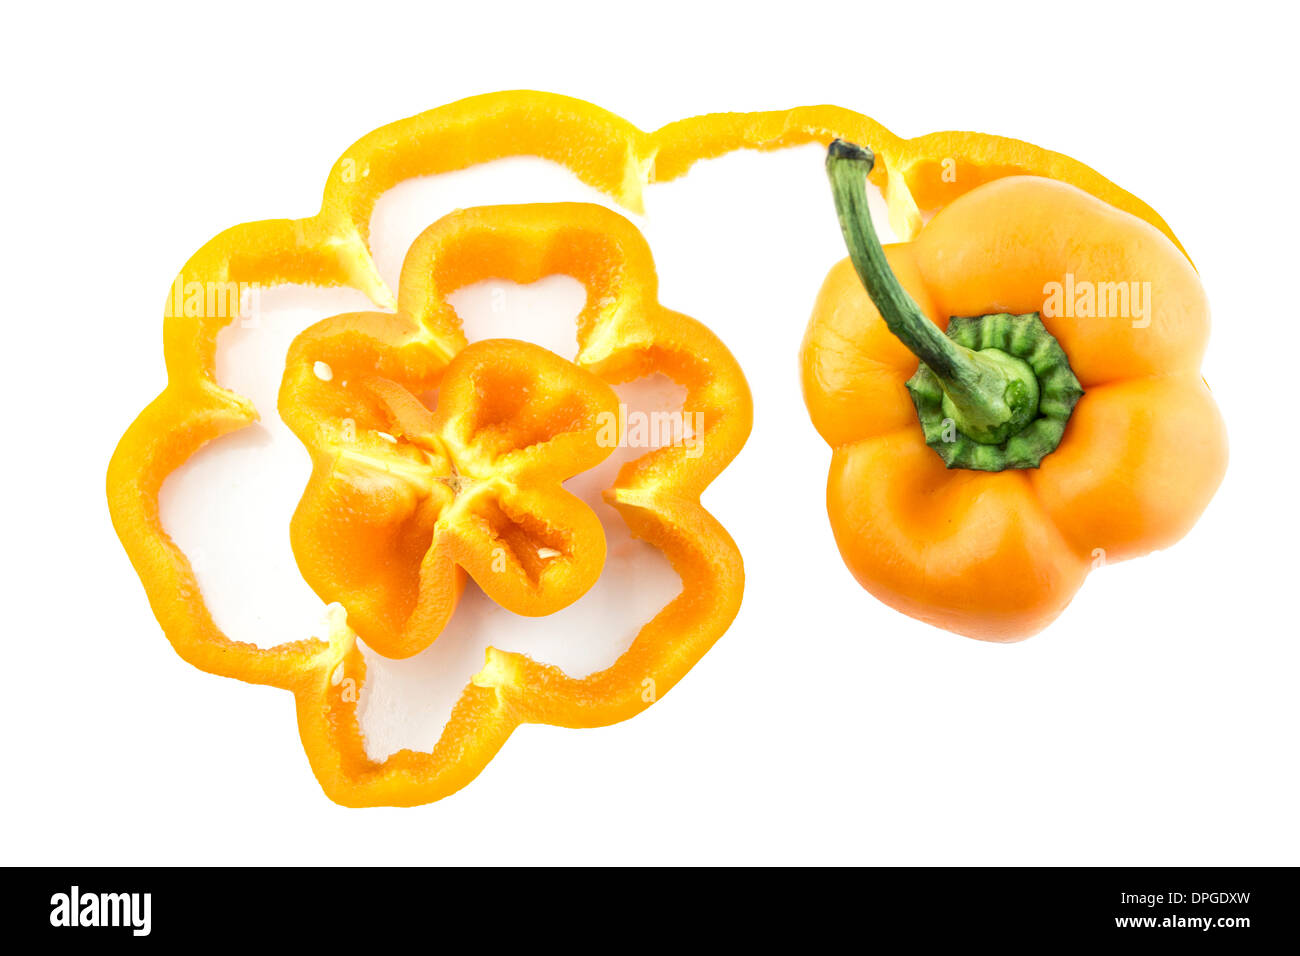 sweet orange bell pepper on white background. Stock Photo